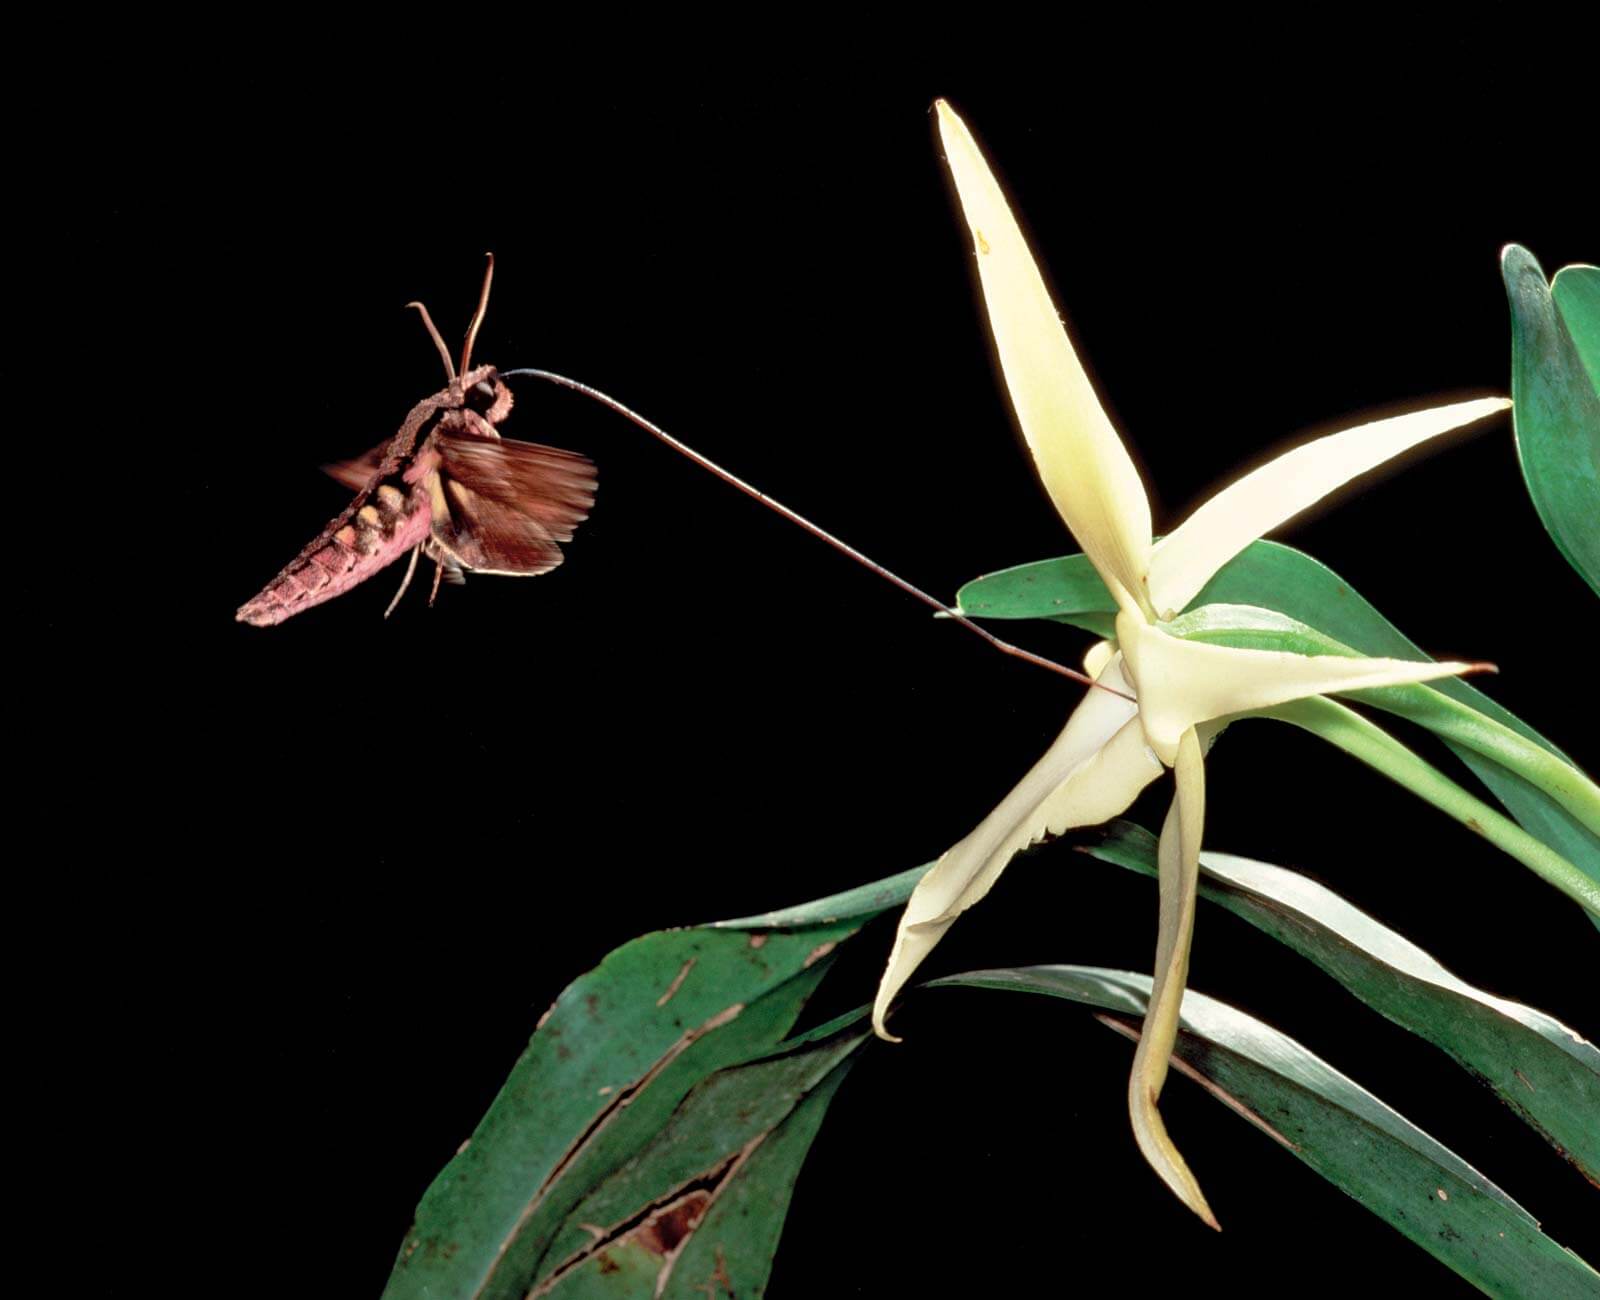 La falena e l'orchidea mantengono una relazione che è uno degli esempi di mutualismo.